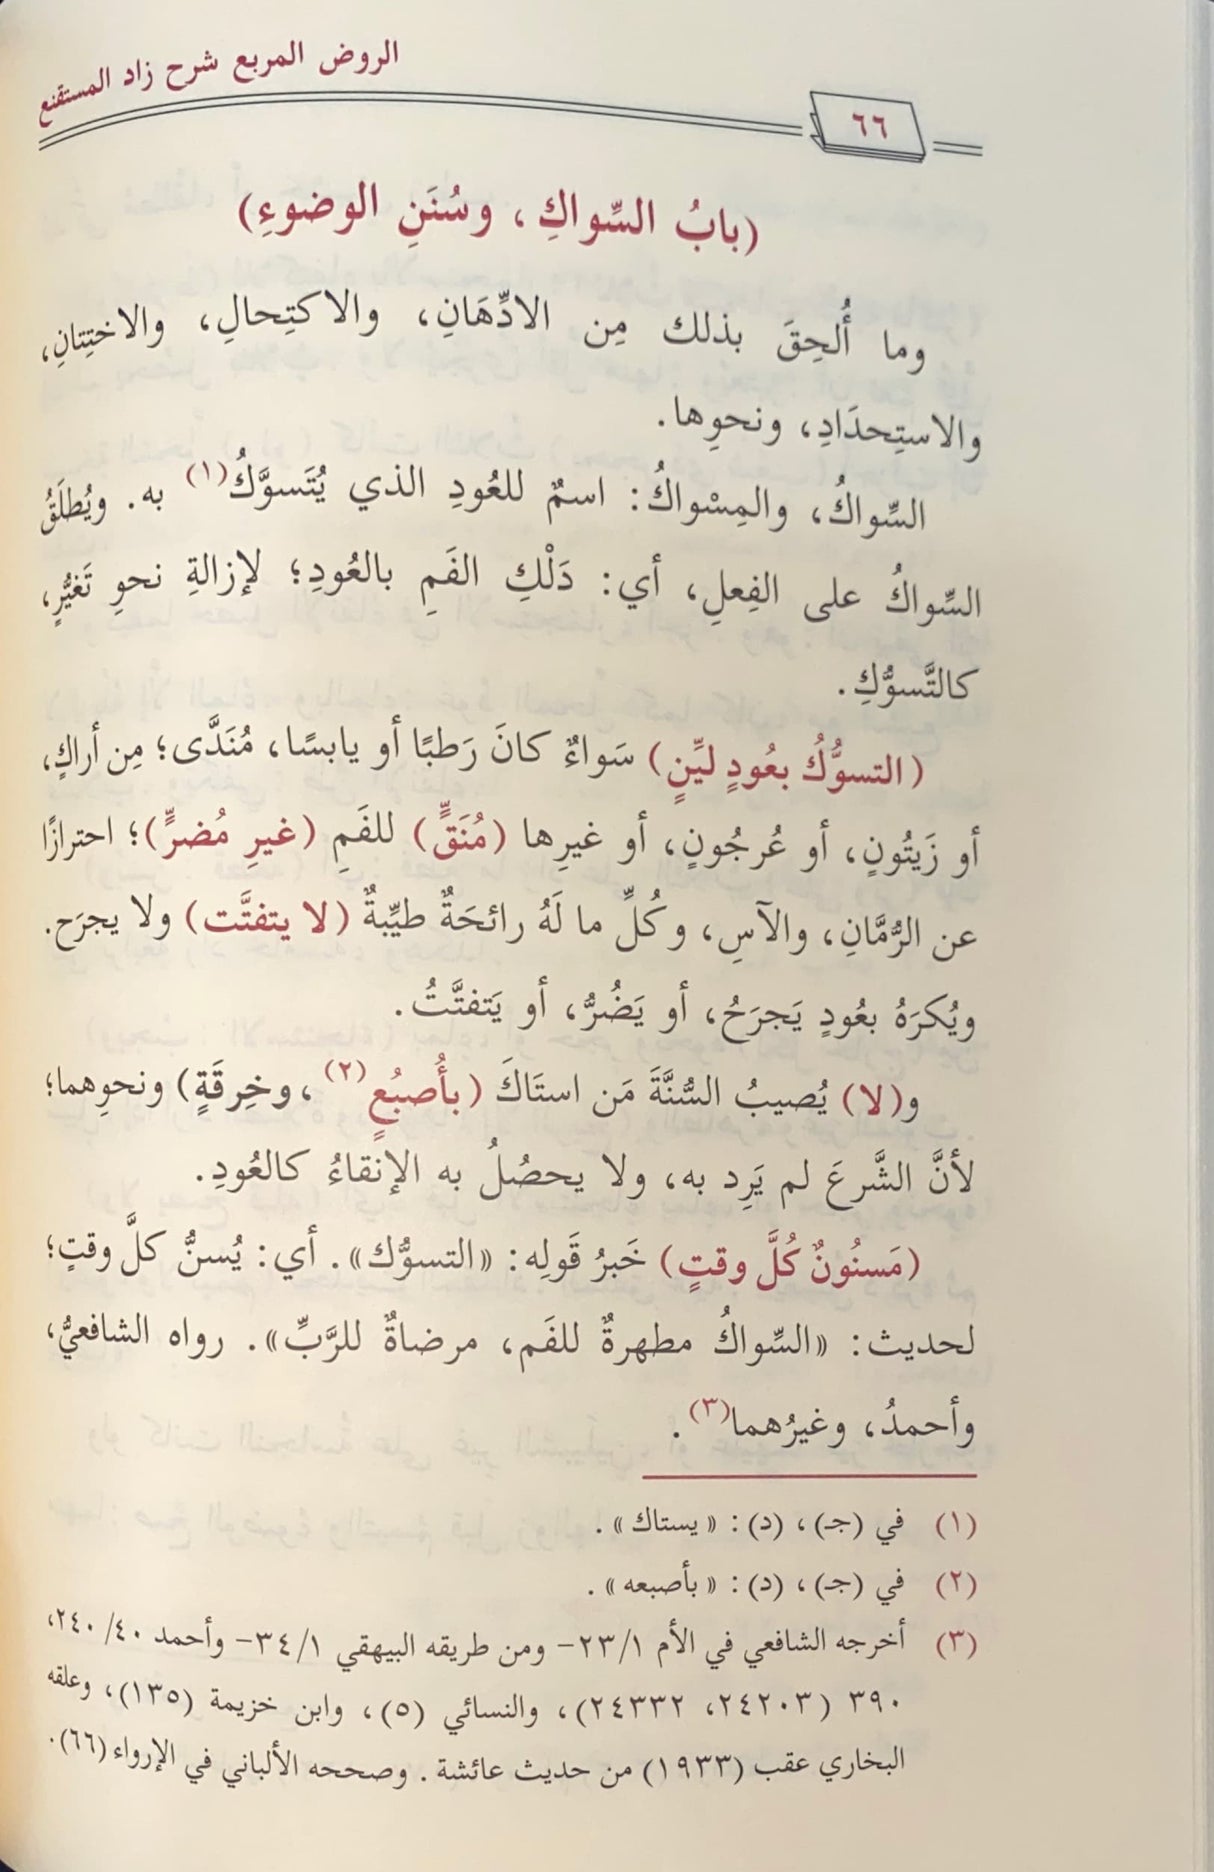 الروض المربع Al Rawdul Murbi (2 Volume Set)